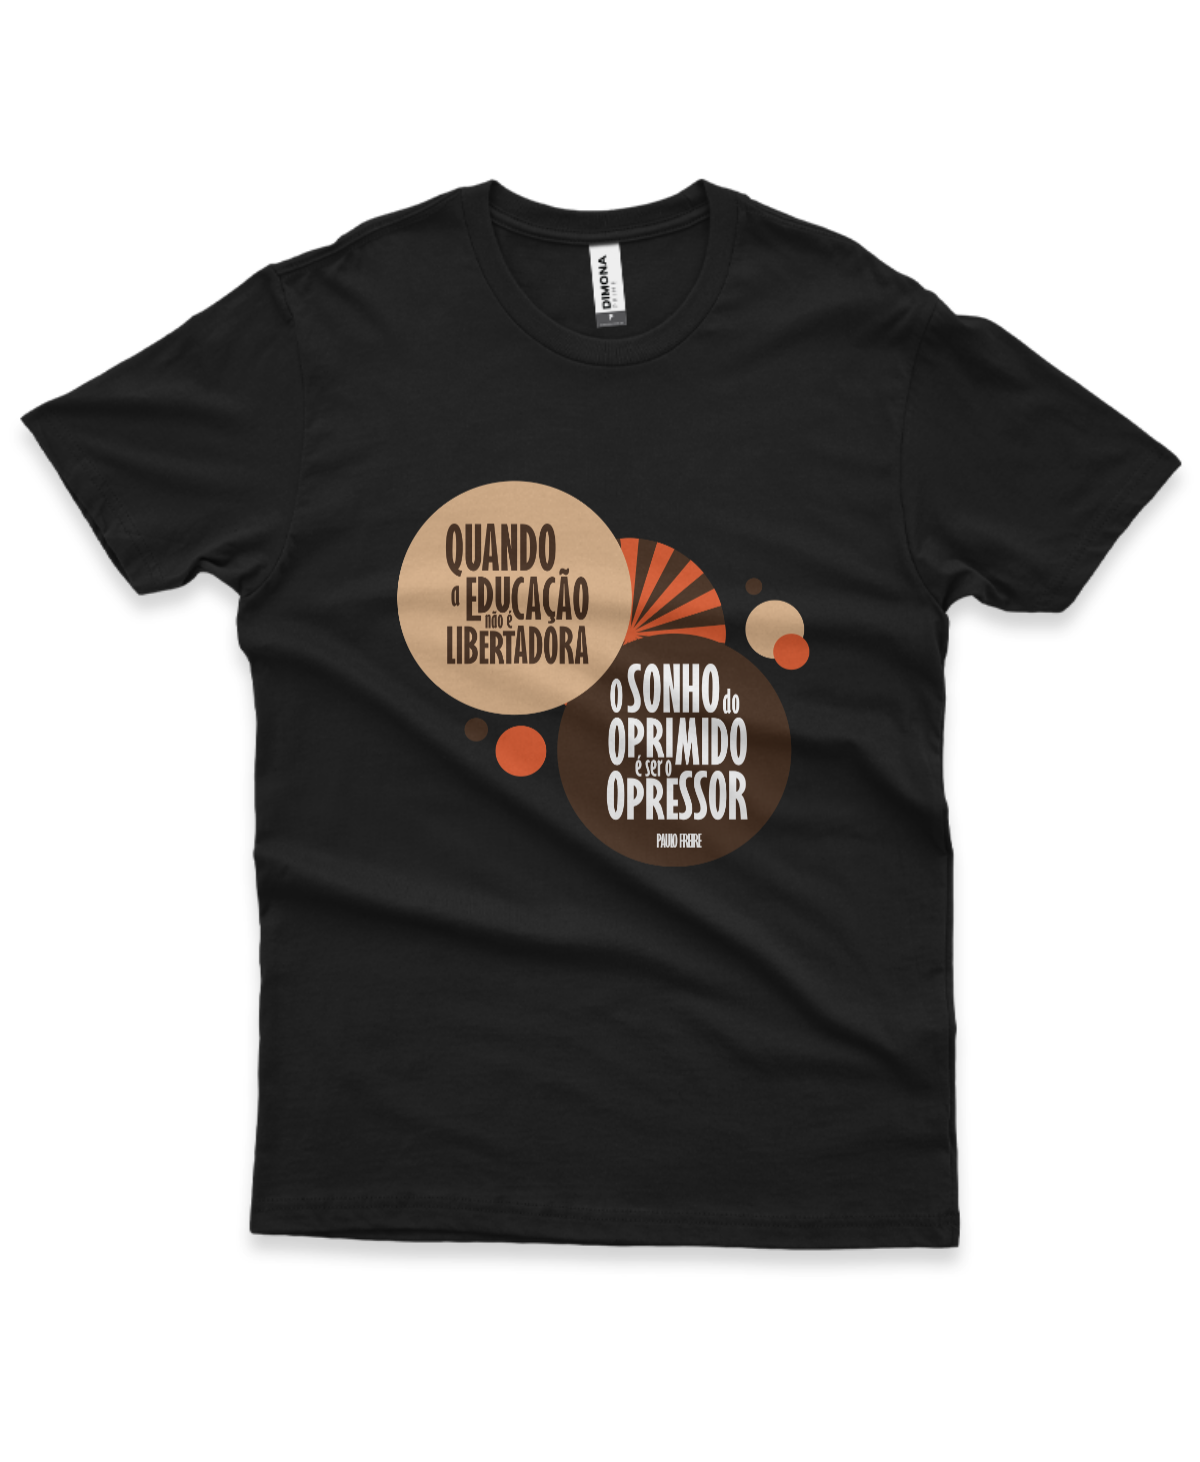 camiseta masculina cor preta com a frase "quando a educação não é libertadora, o sonho do oprimido é ser o opressor"